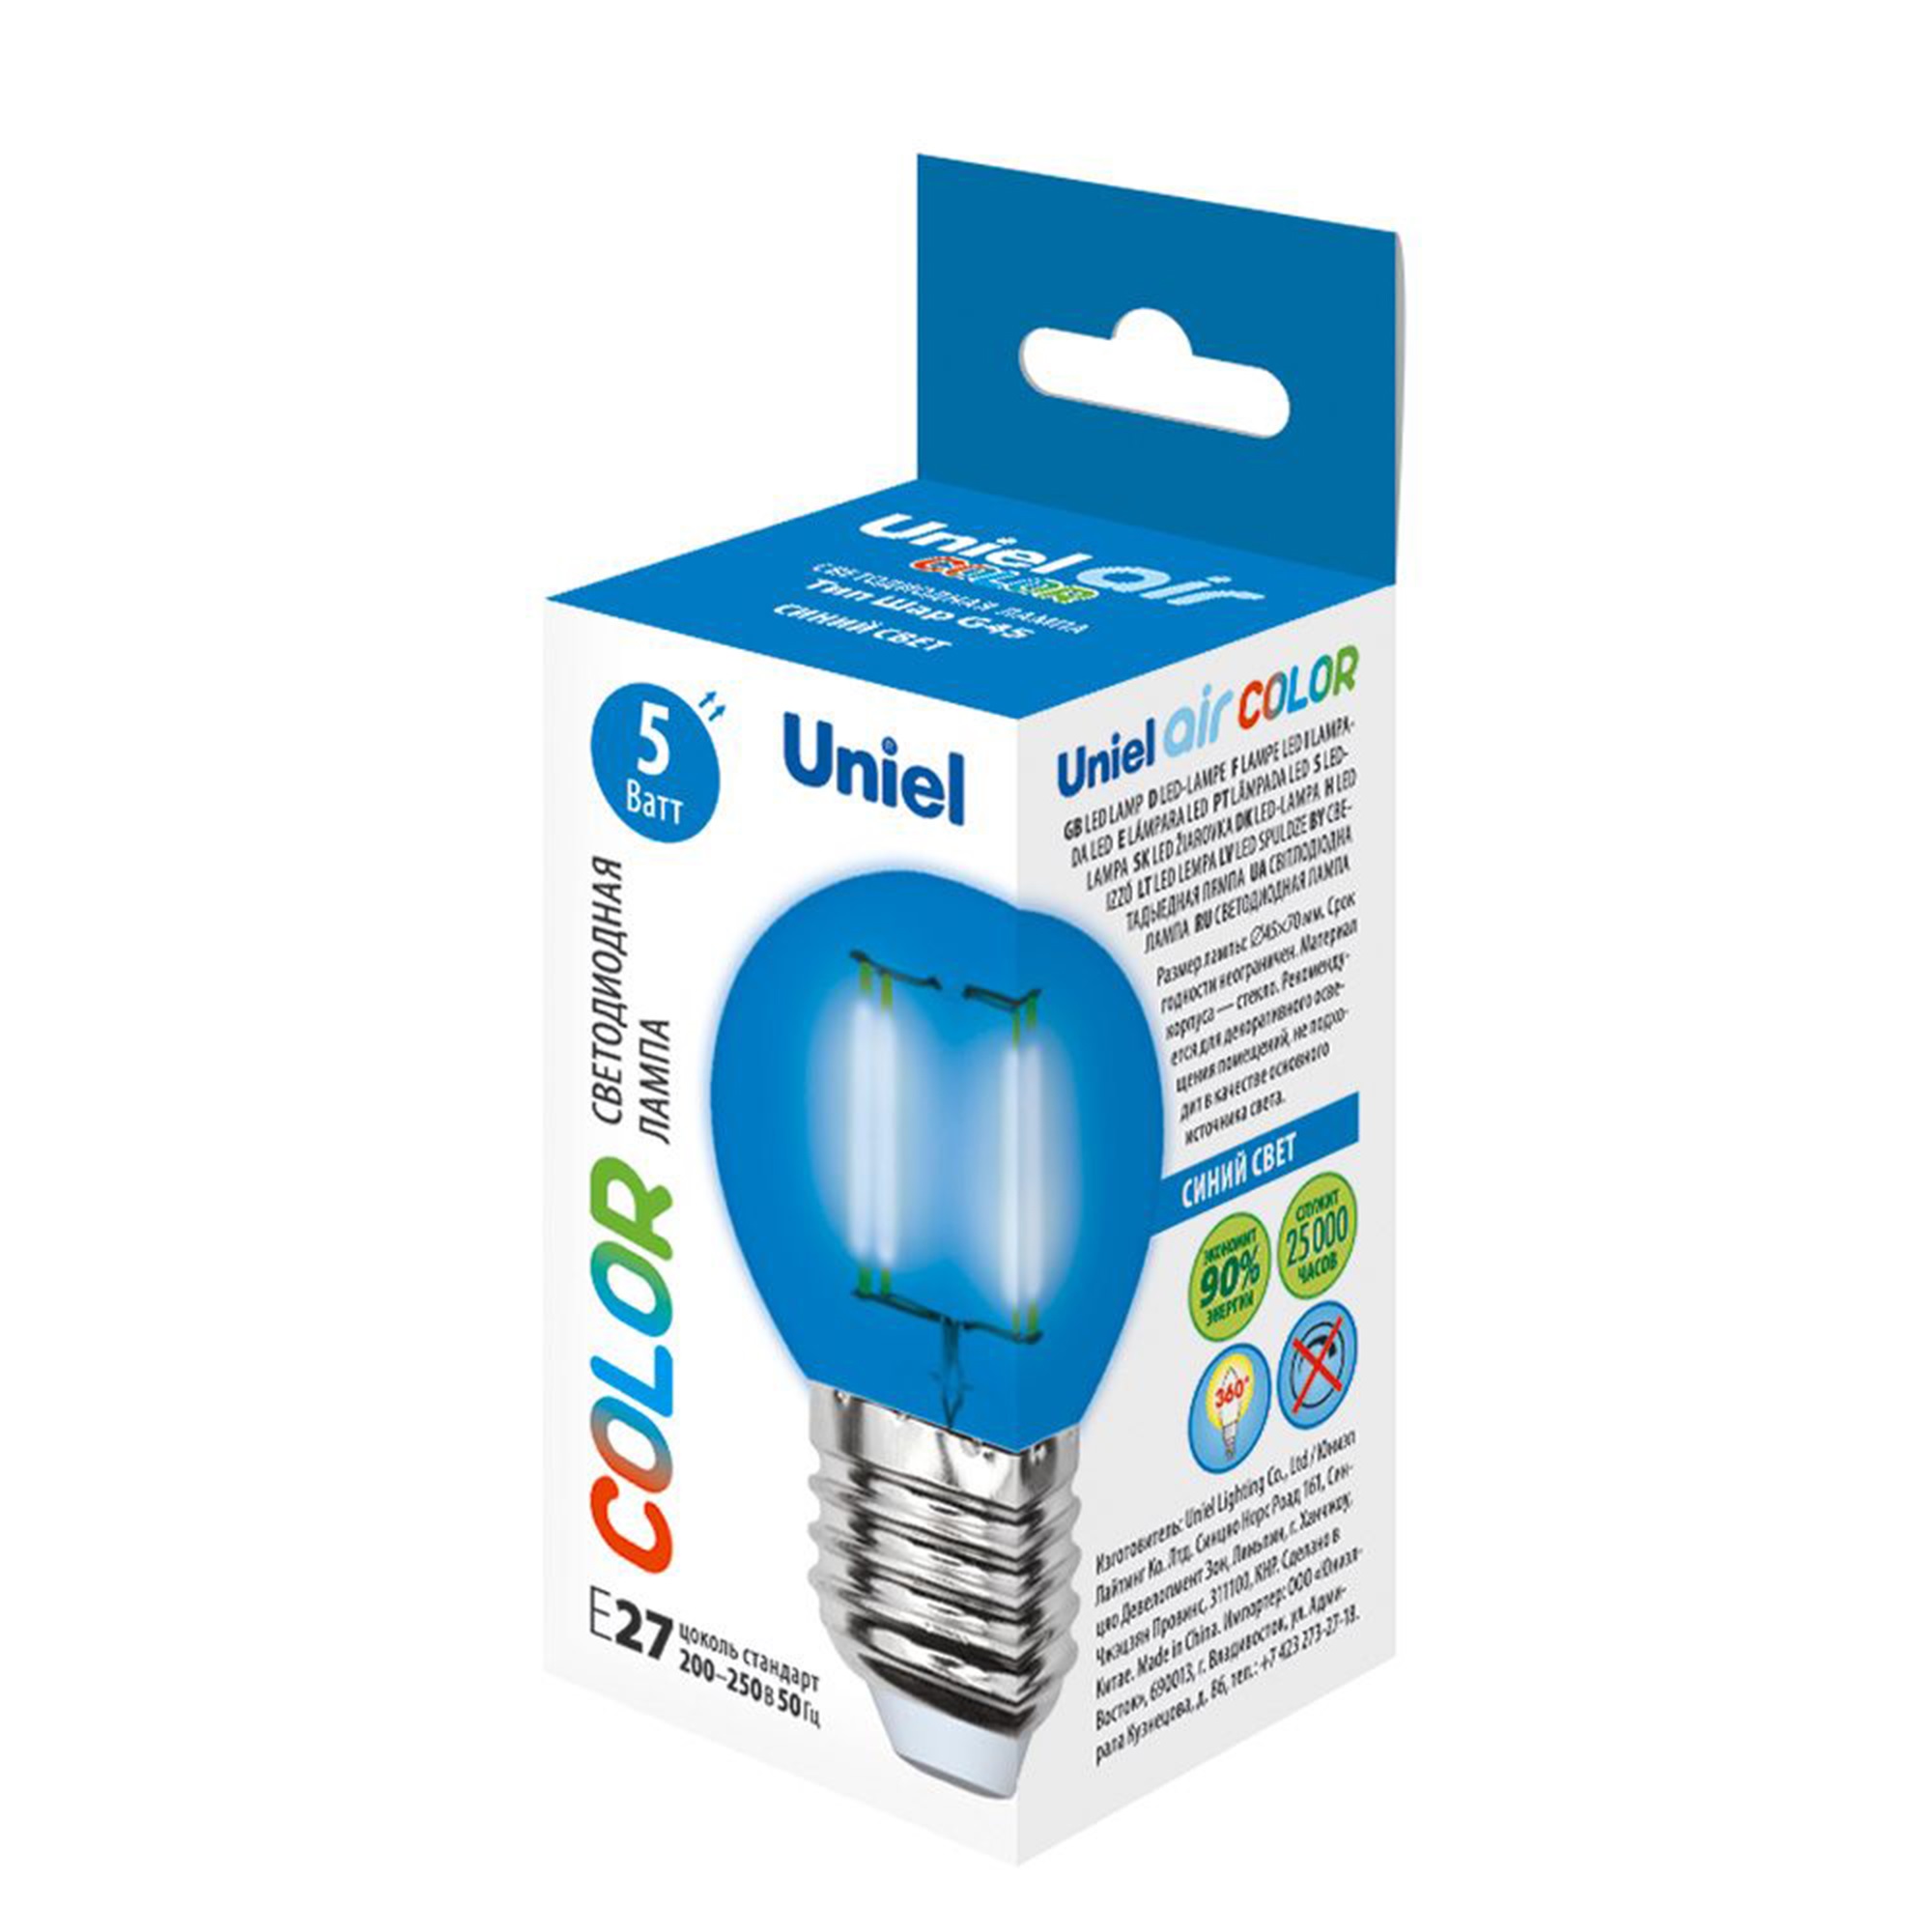 LED-G45-5W-BLUE-E27 GLA02BL Лампа светодиодная. Форма шар. Серия Air color. Синий свет. Картон. ТМ Uniel